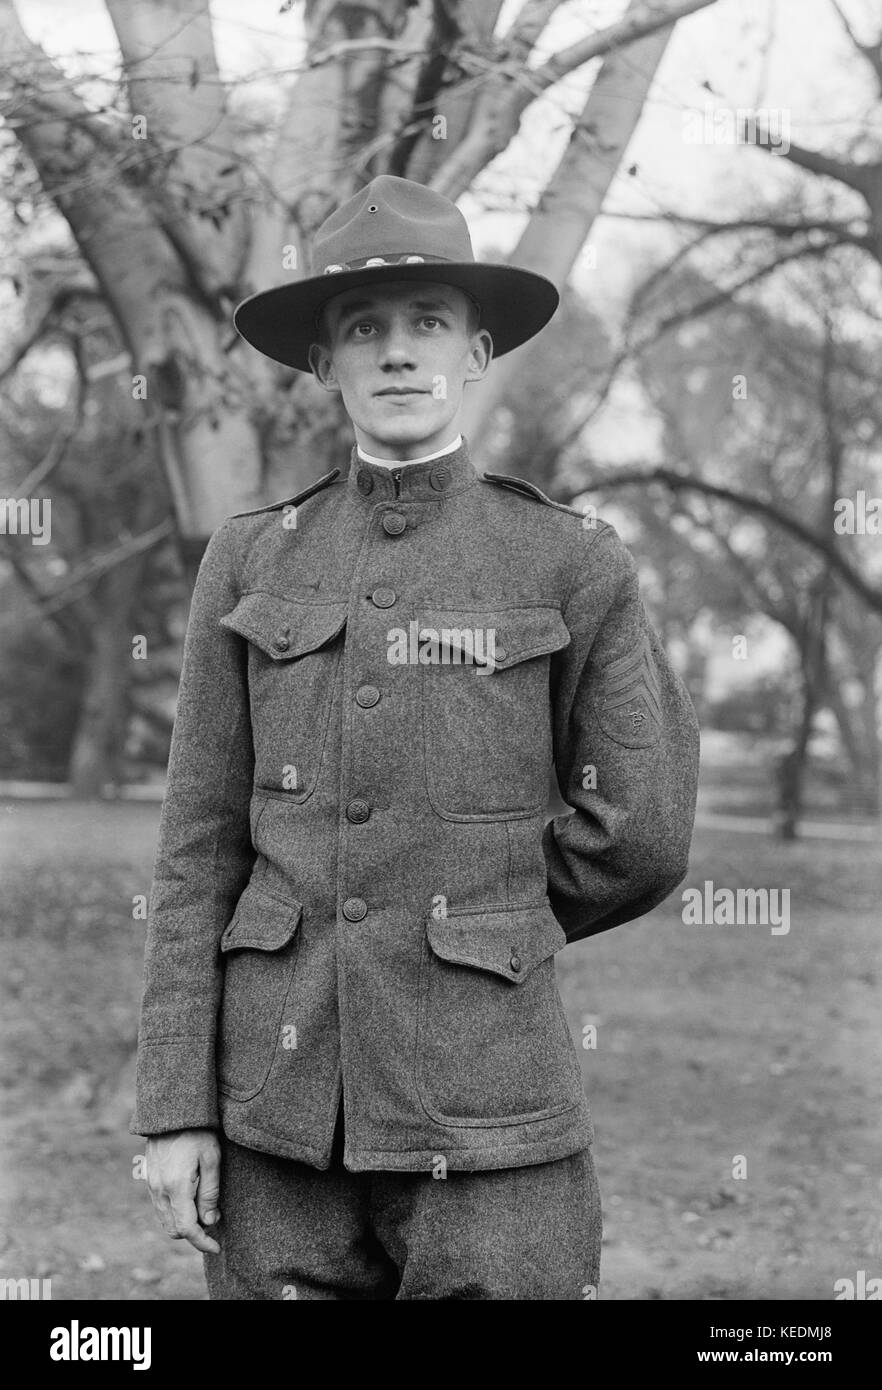 U.s signal corps sergente dell'esercito in uniforme,ritratto,Stati Uniti d'America,Harris & ewing,1916 Foto Stock